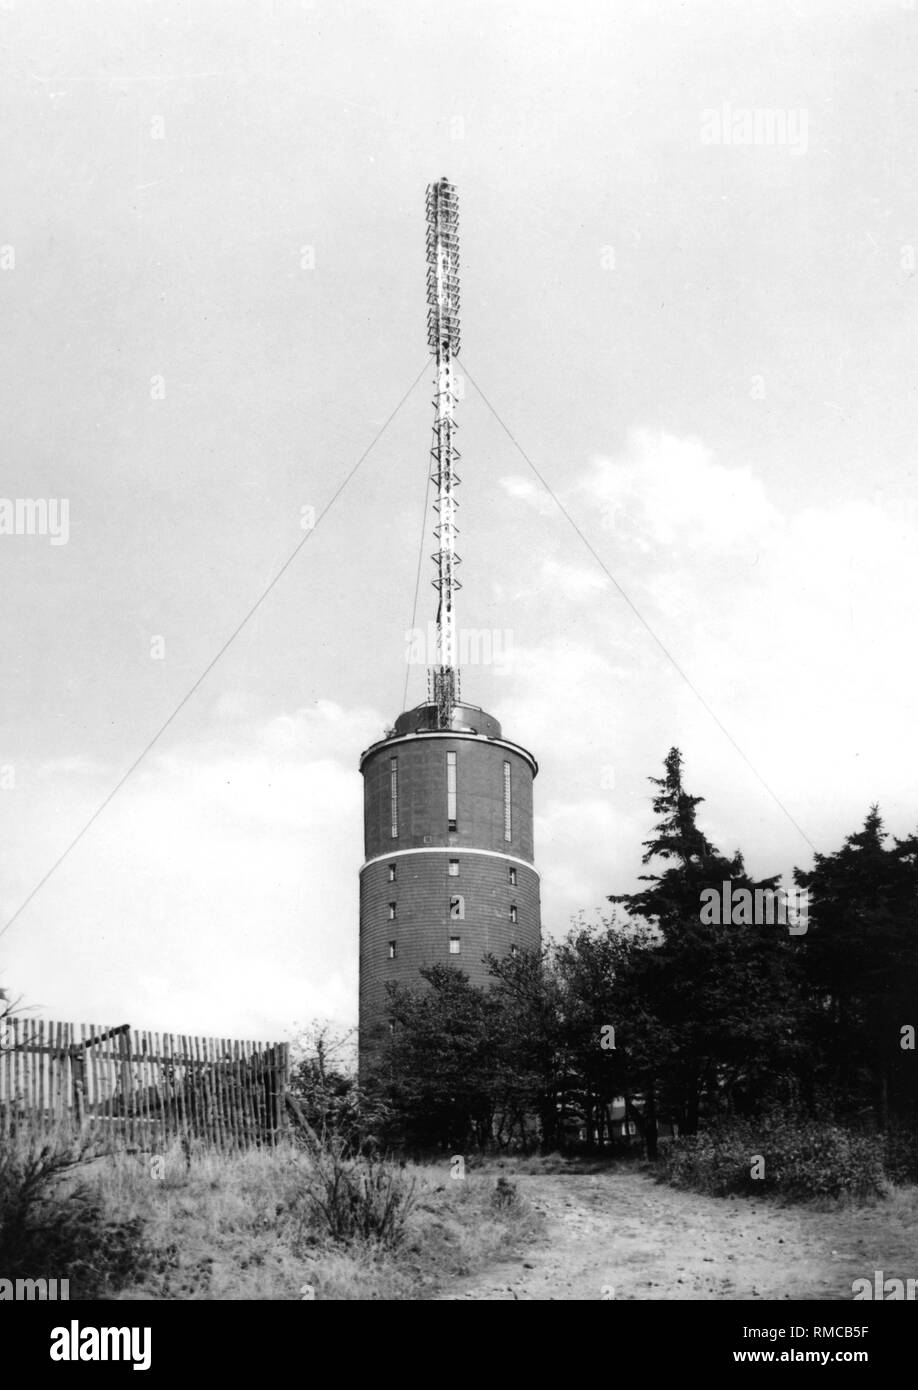 y VHF en la torre de 916 metros de alto, el Estado federado de Turingia Inselsberg para la difusión de la producción centralizada de los programas de radio y televisión